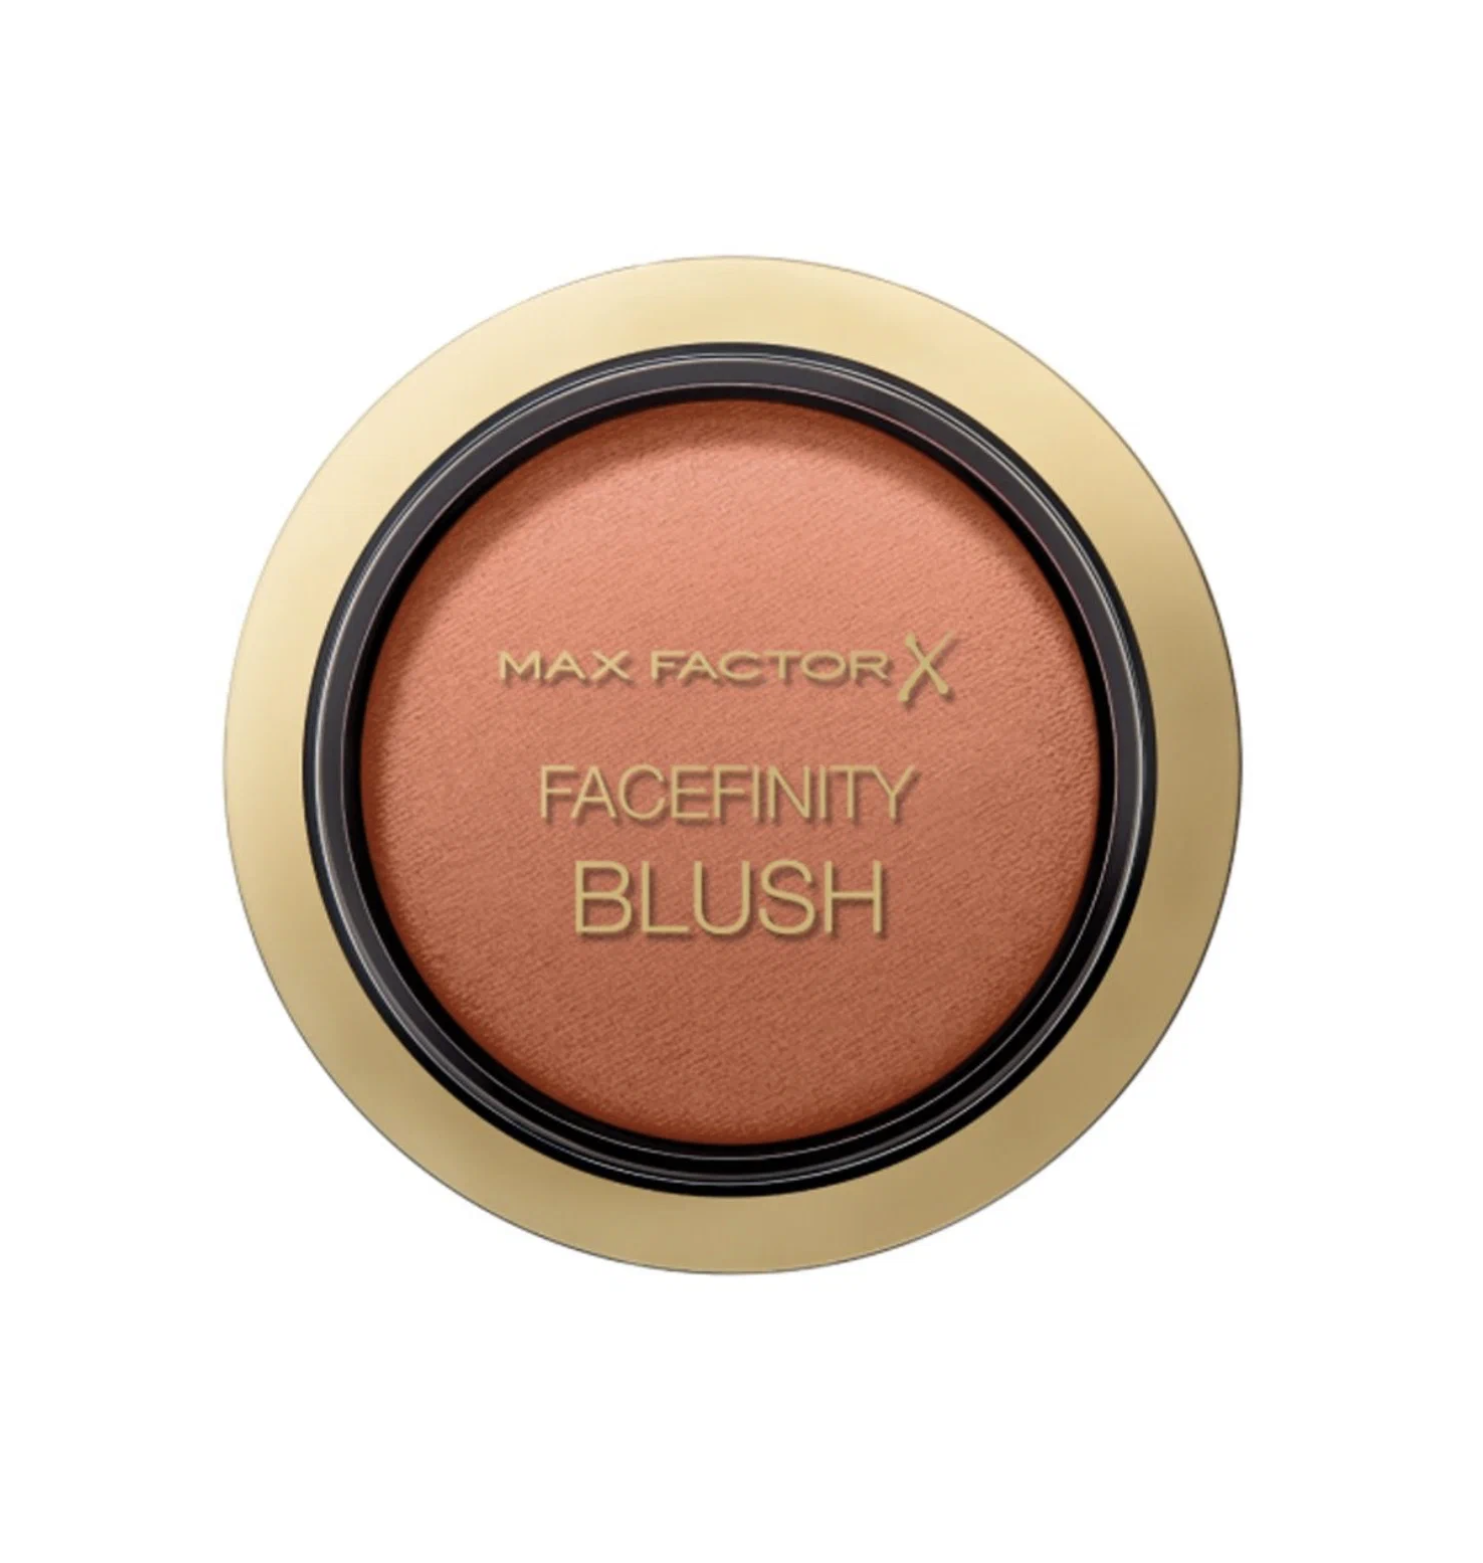 Румяна Max Factor Facefinity Blush тон 40 Delicate Apricot учимся читать щенячий патруль дружные помощники